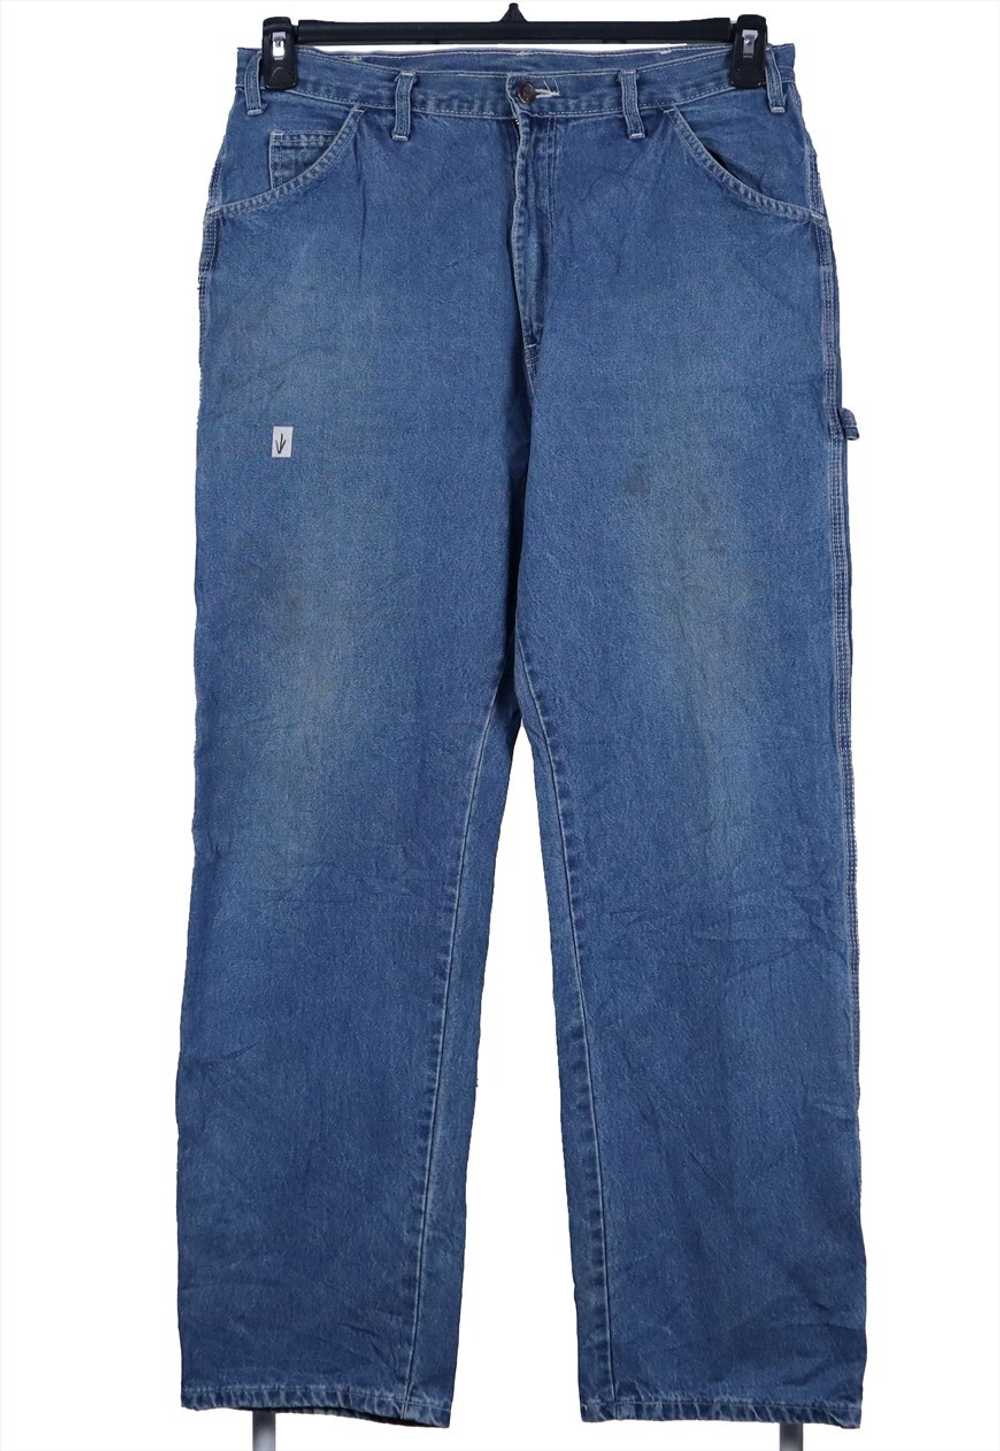 Vintage 90's Dickies Jeans / Pants Carpenter Work… - image 2